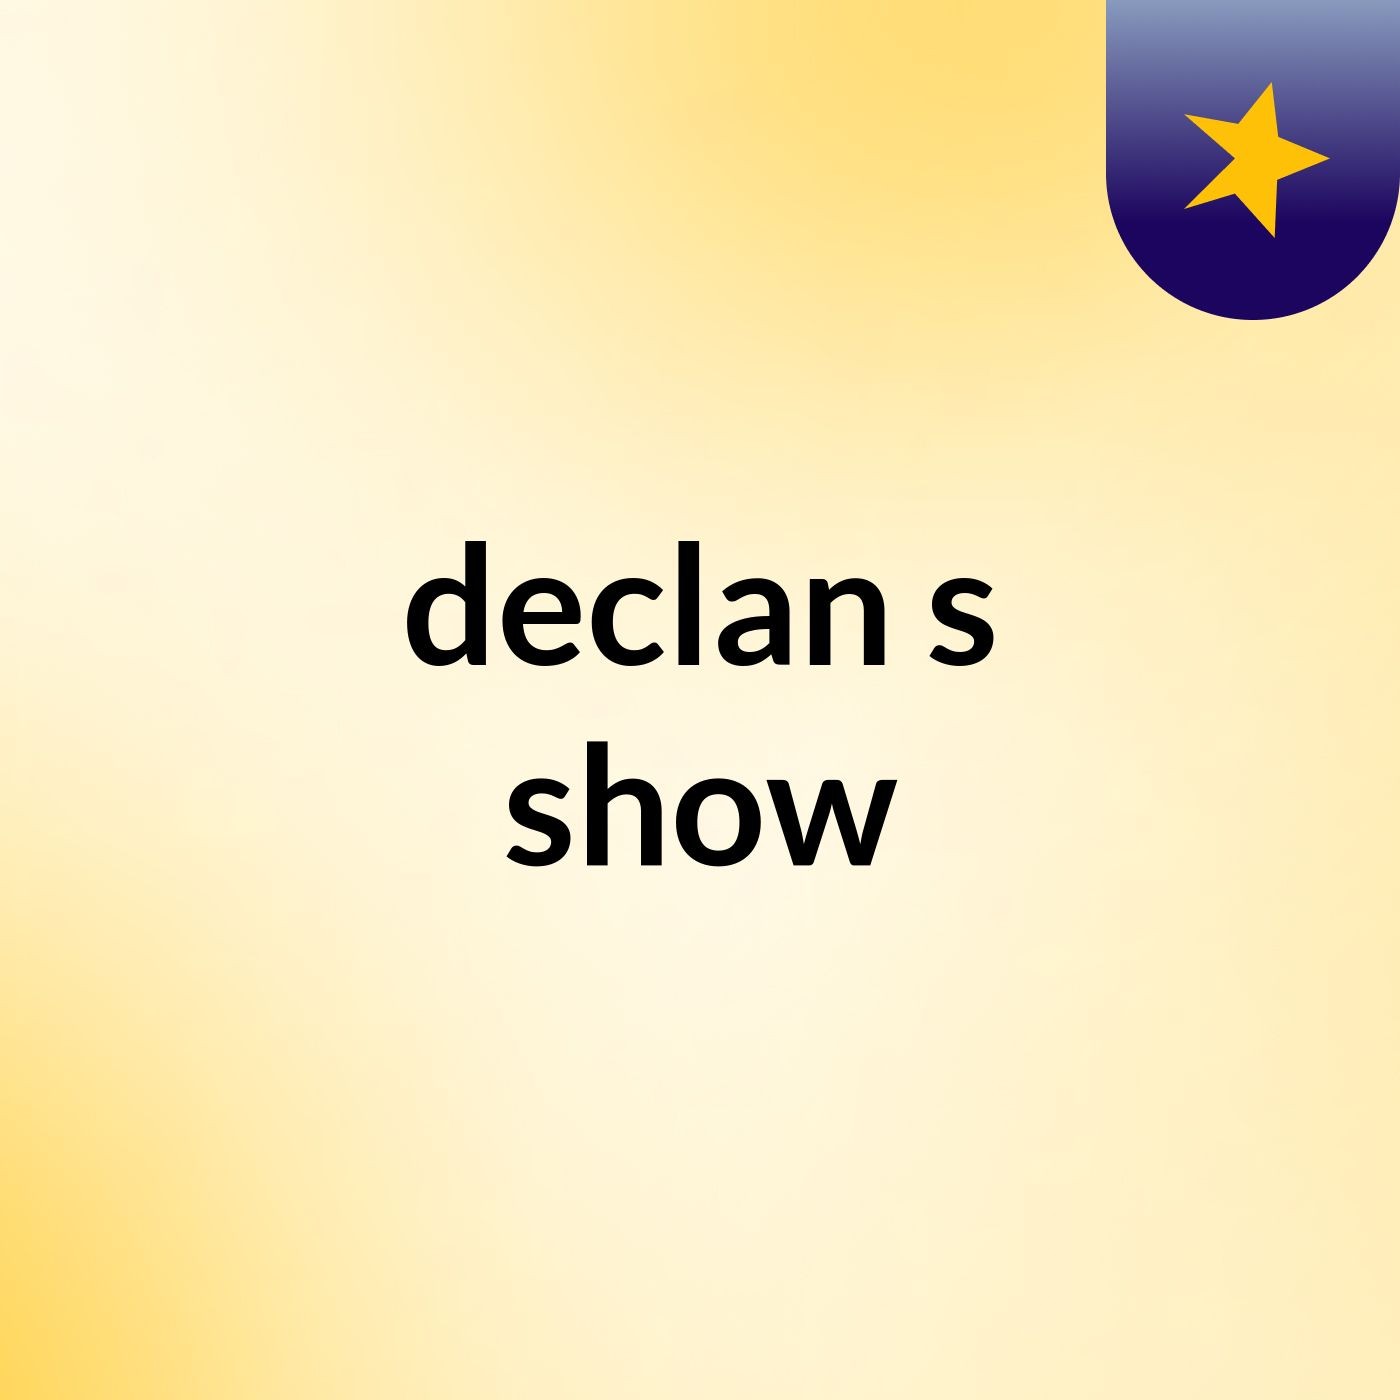 declan's show